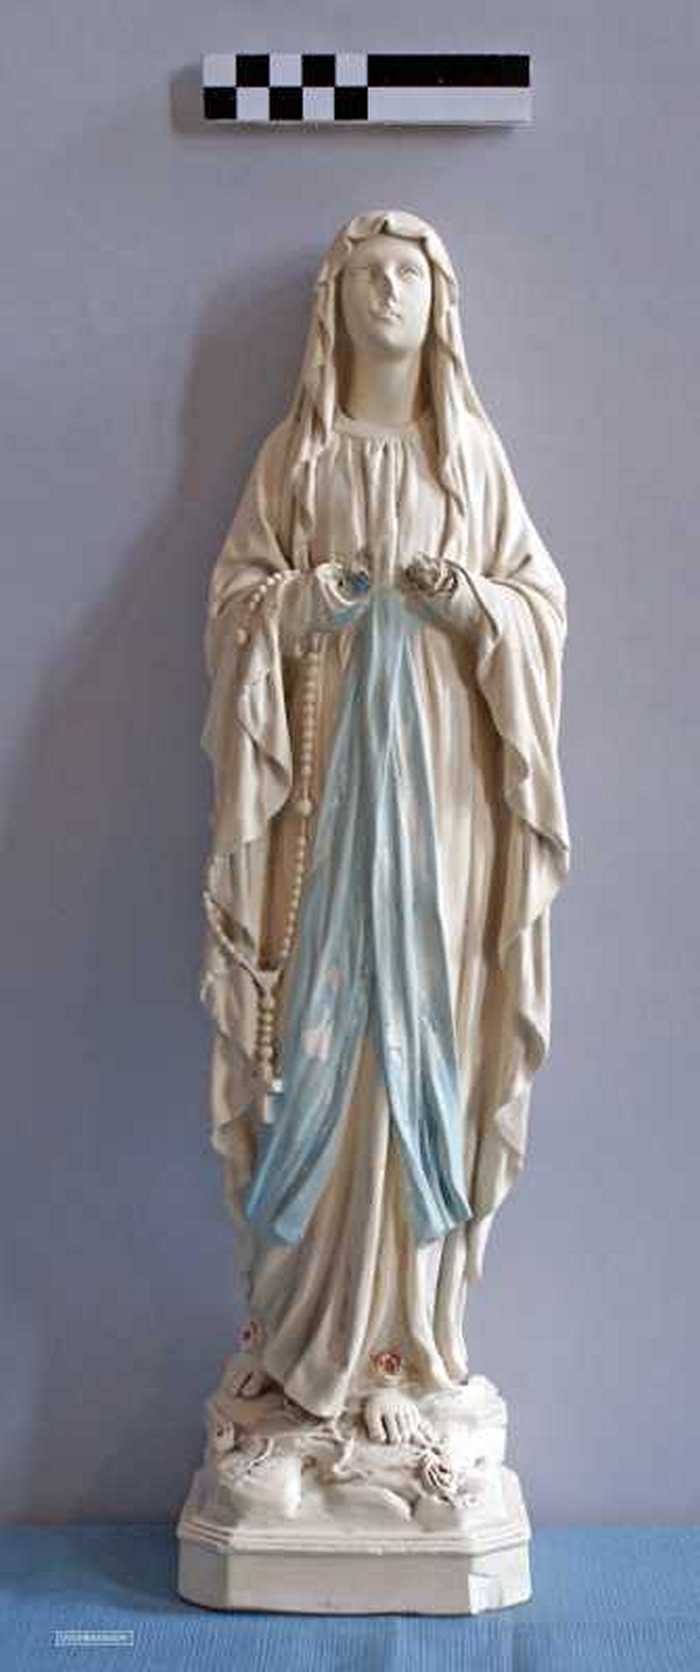 Onze-Lieve-Vrouw van Lourdes